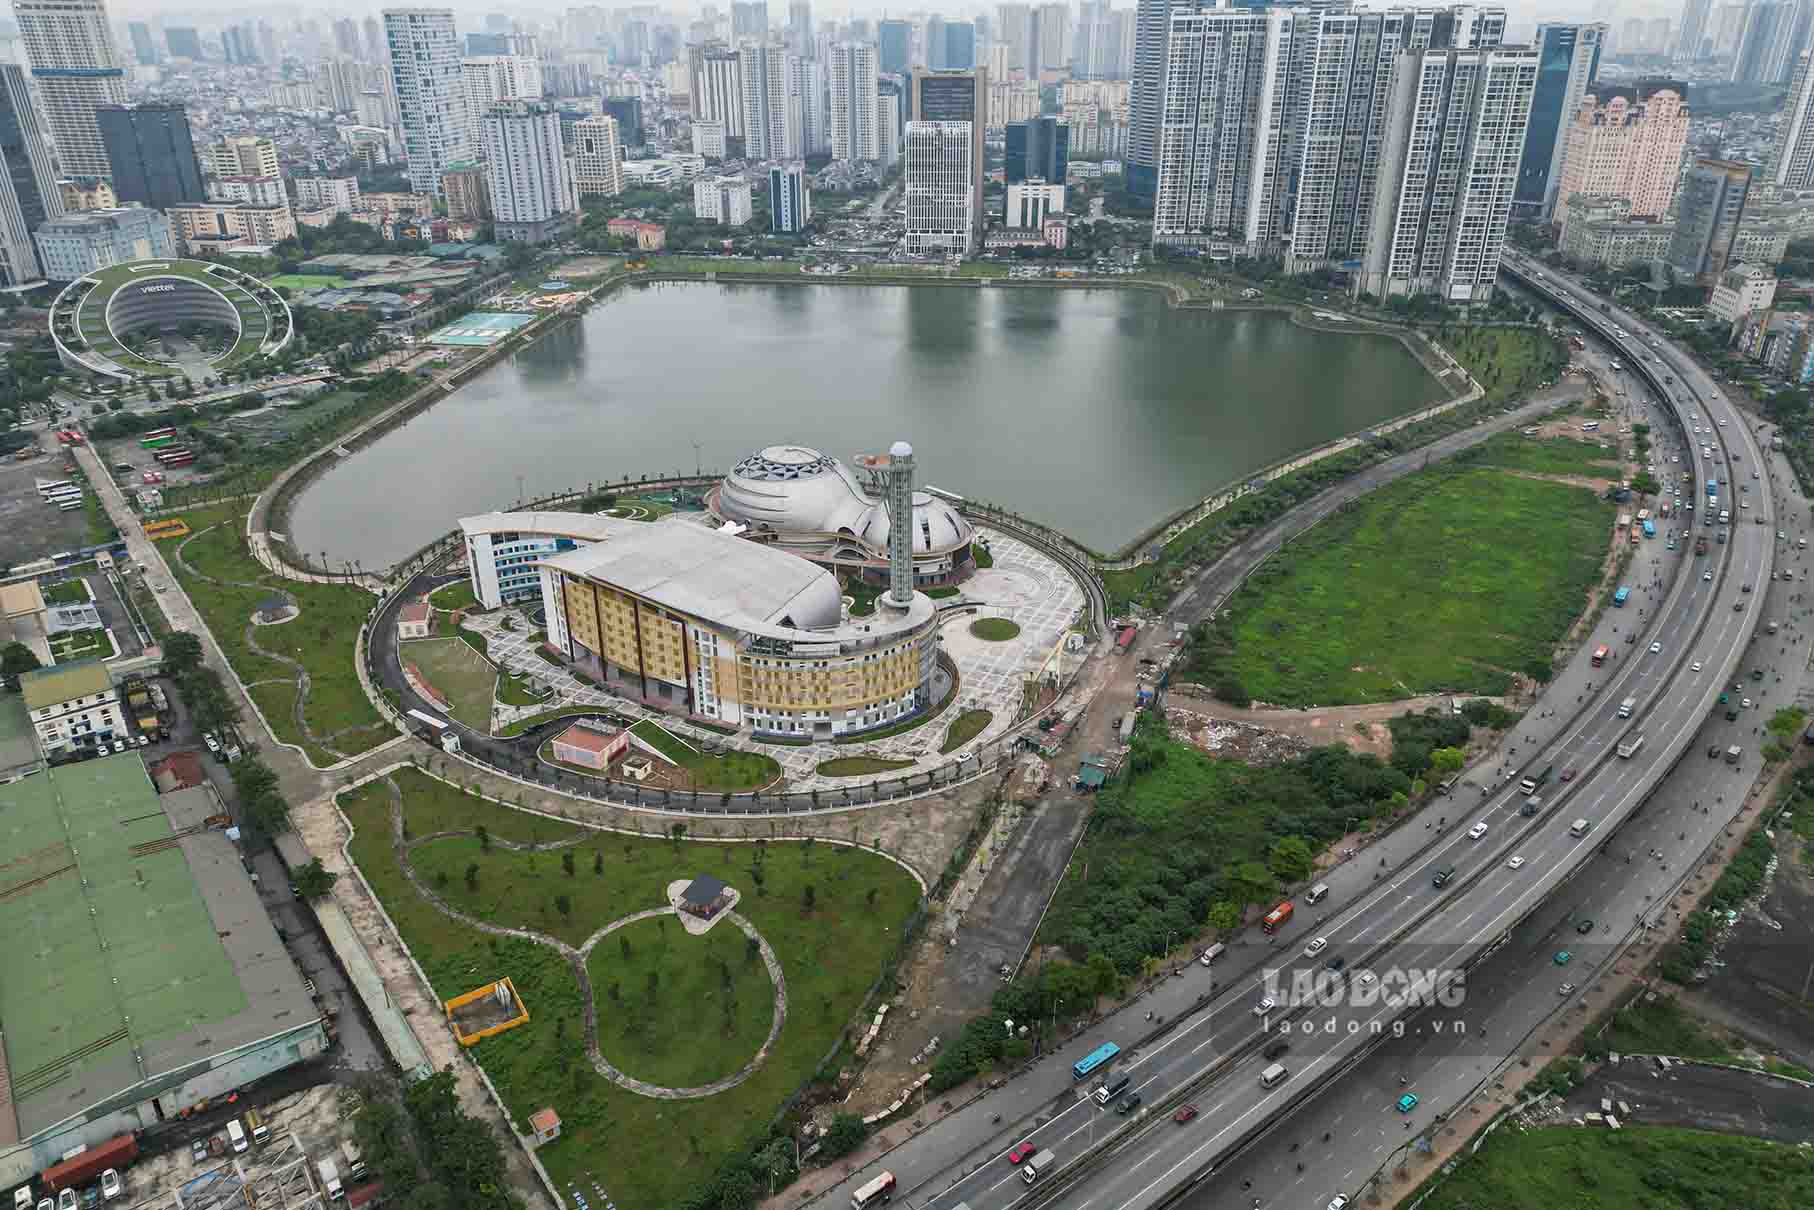 Dự án có tổng diện tích lên đến gần 40.000m2, vị trí tại khu công viên và hồ điều hòa CV1 thuộc Khu đô thị mới Cầu Giấy, sát đường Phạm Hùng, do Ban Quản lý dự án đầu tư xây dựng công trình văn hóa - xã hội TP Hà Nội làm chủ đầu tư.